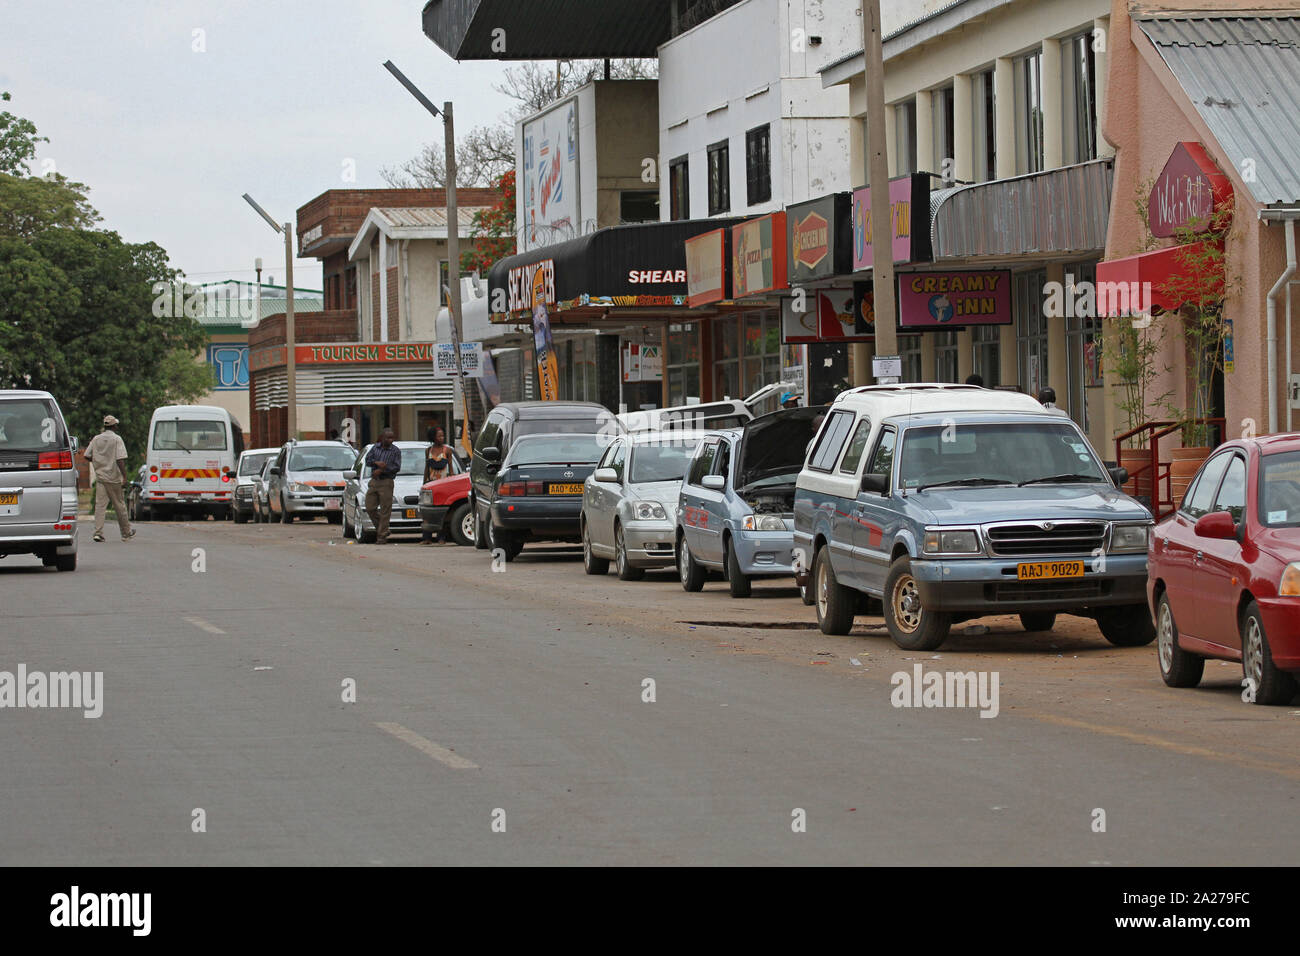 Strada con traffico parcheggiate e negozi, Zimbabwe. Foto Stock